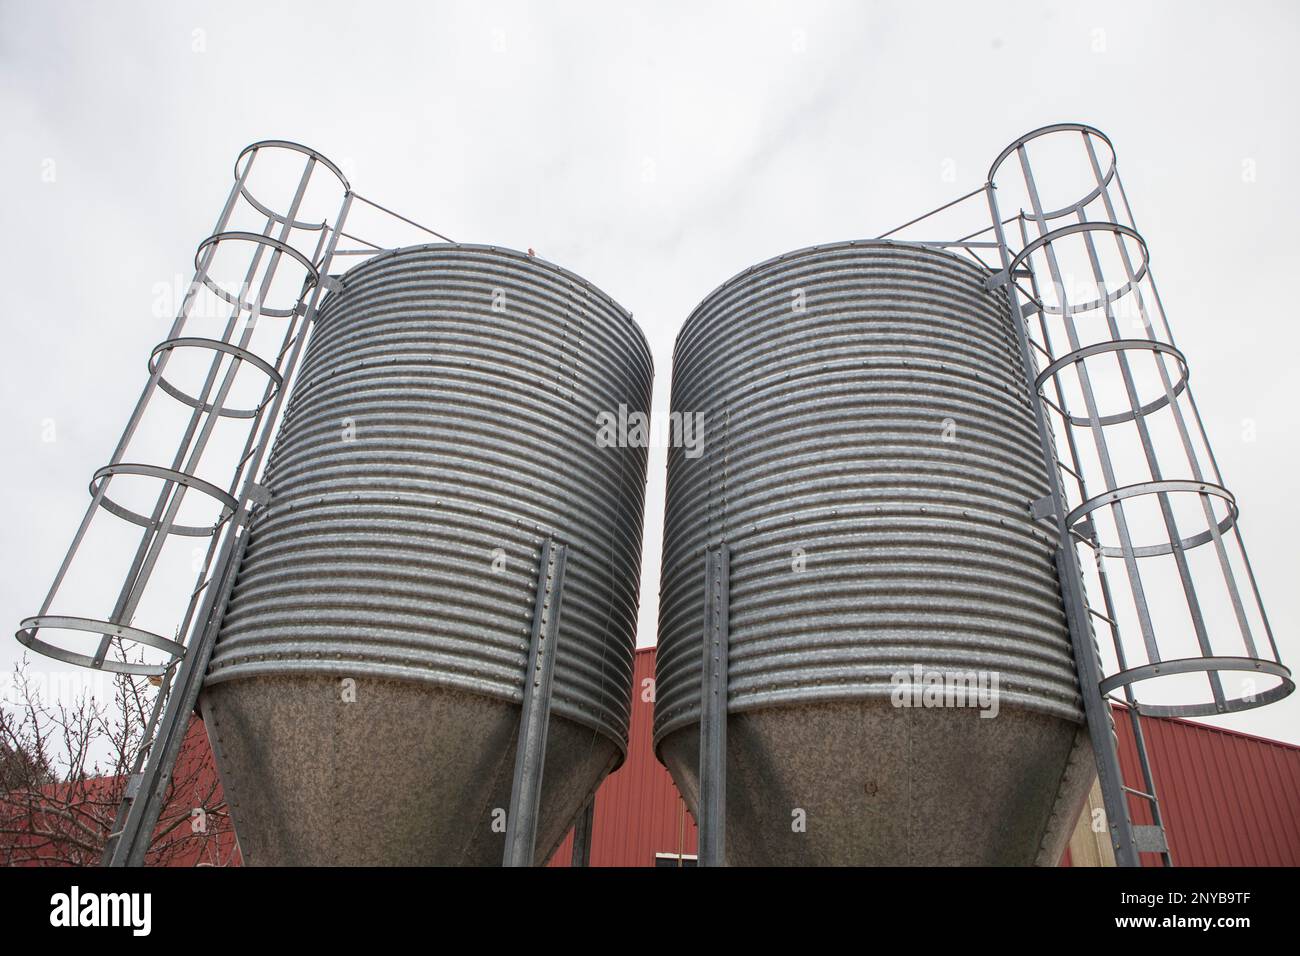 Animal feed silos. Zinc-coated storage for animal husbandry. Stock Photo